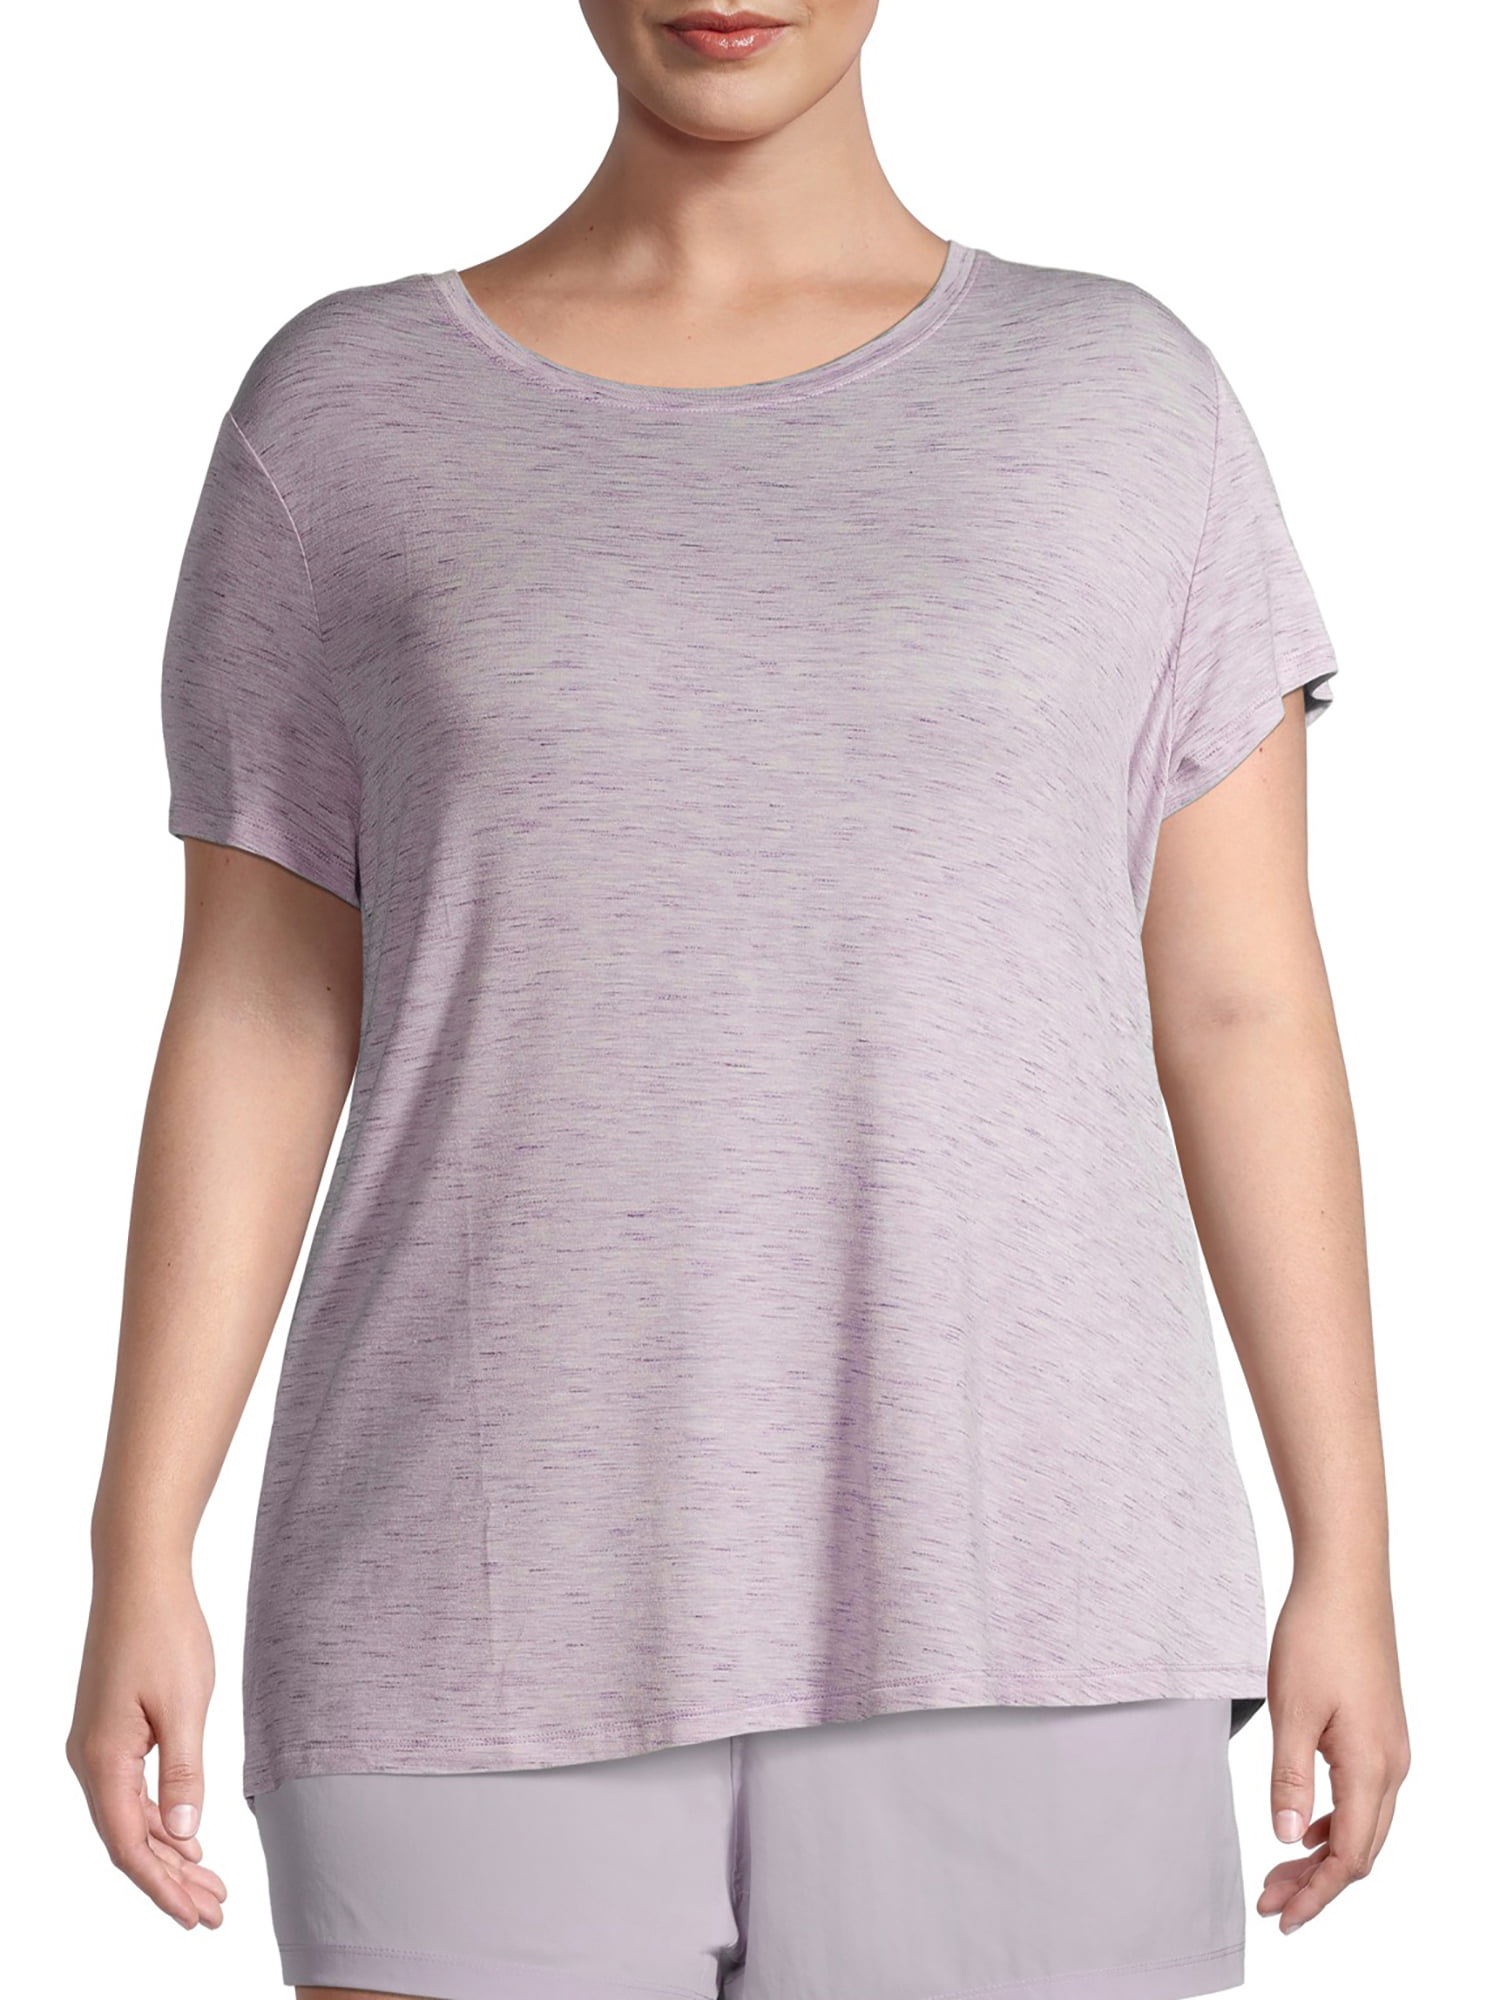 Avia Women's Plus Size Short Sleeve Commuter T-Shirt - Walmart.com